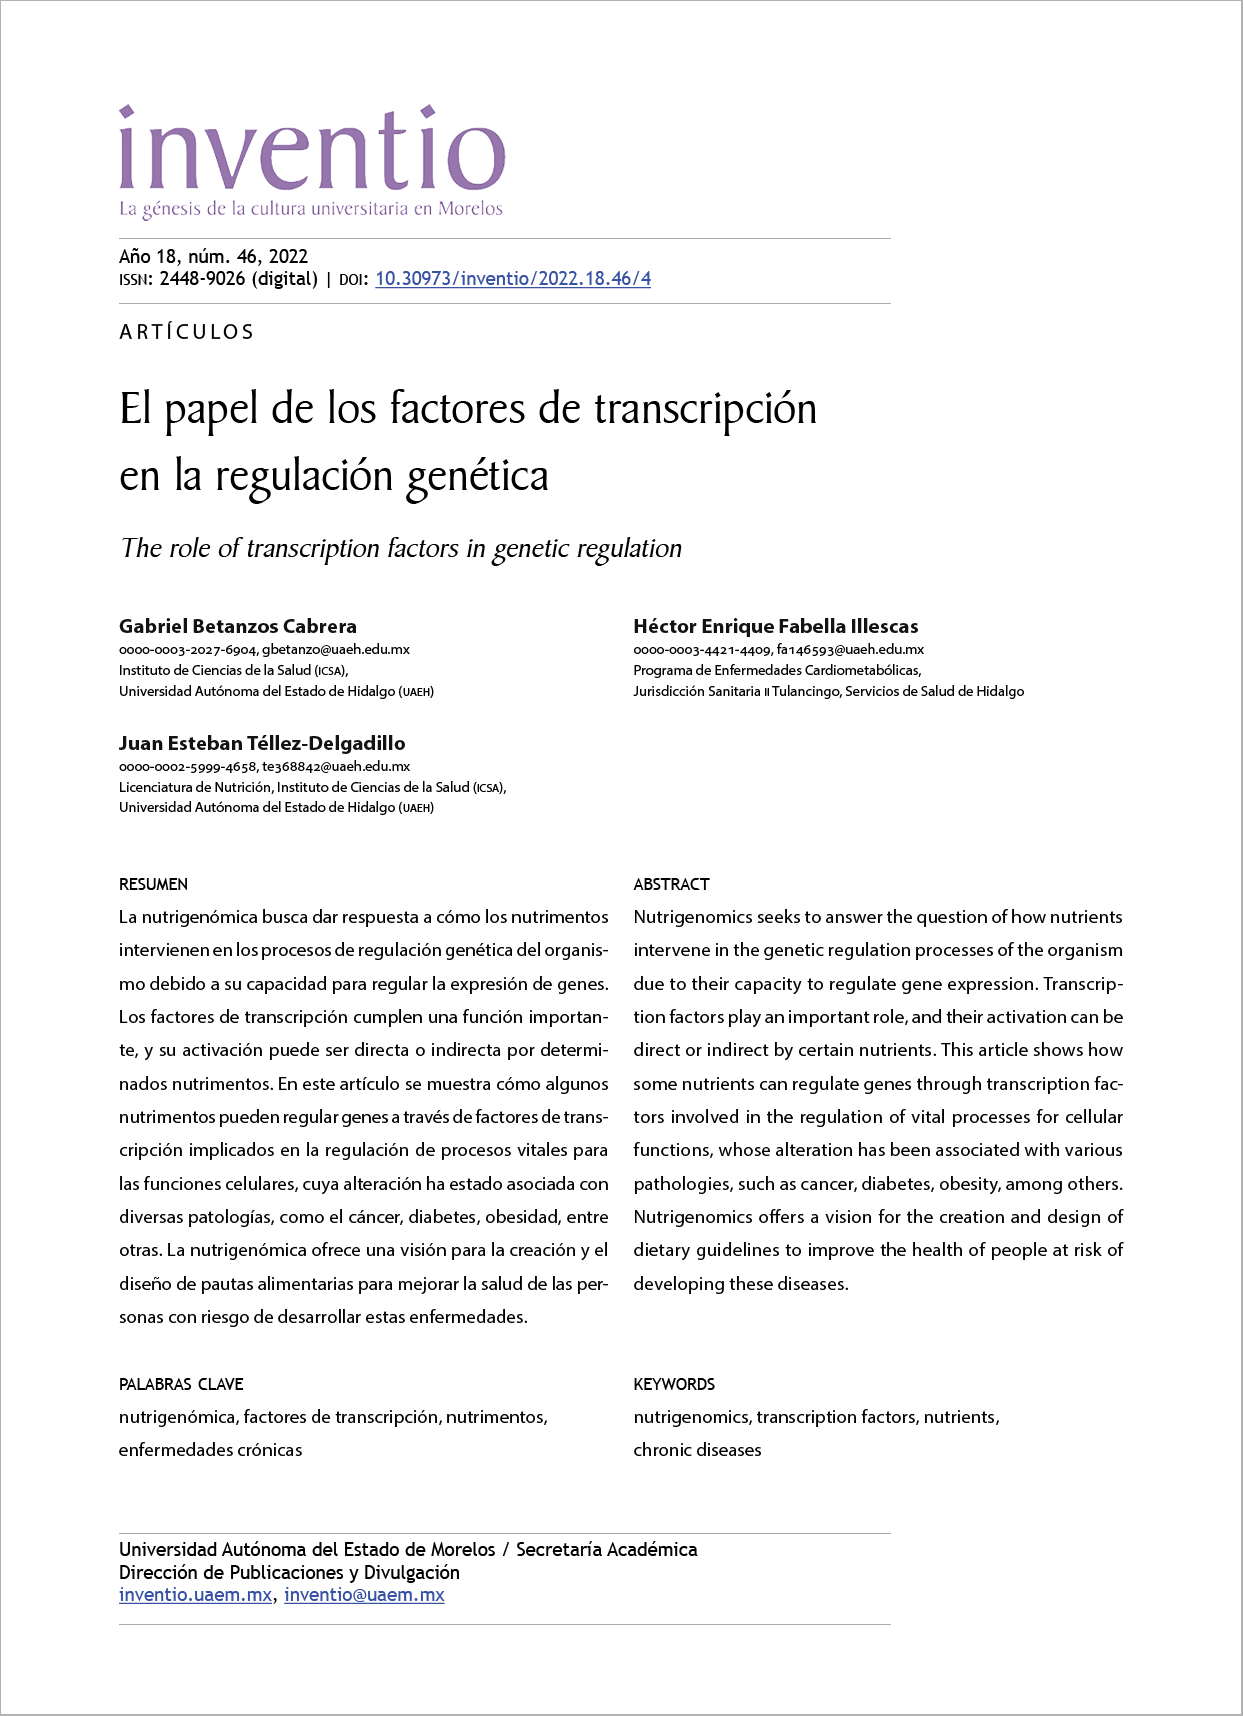 El papel de los factores de transcripción en la regulación genética